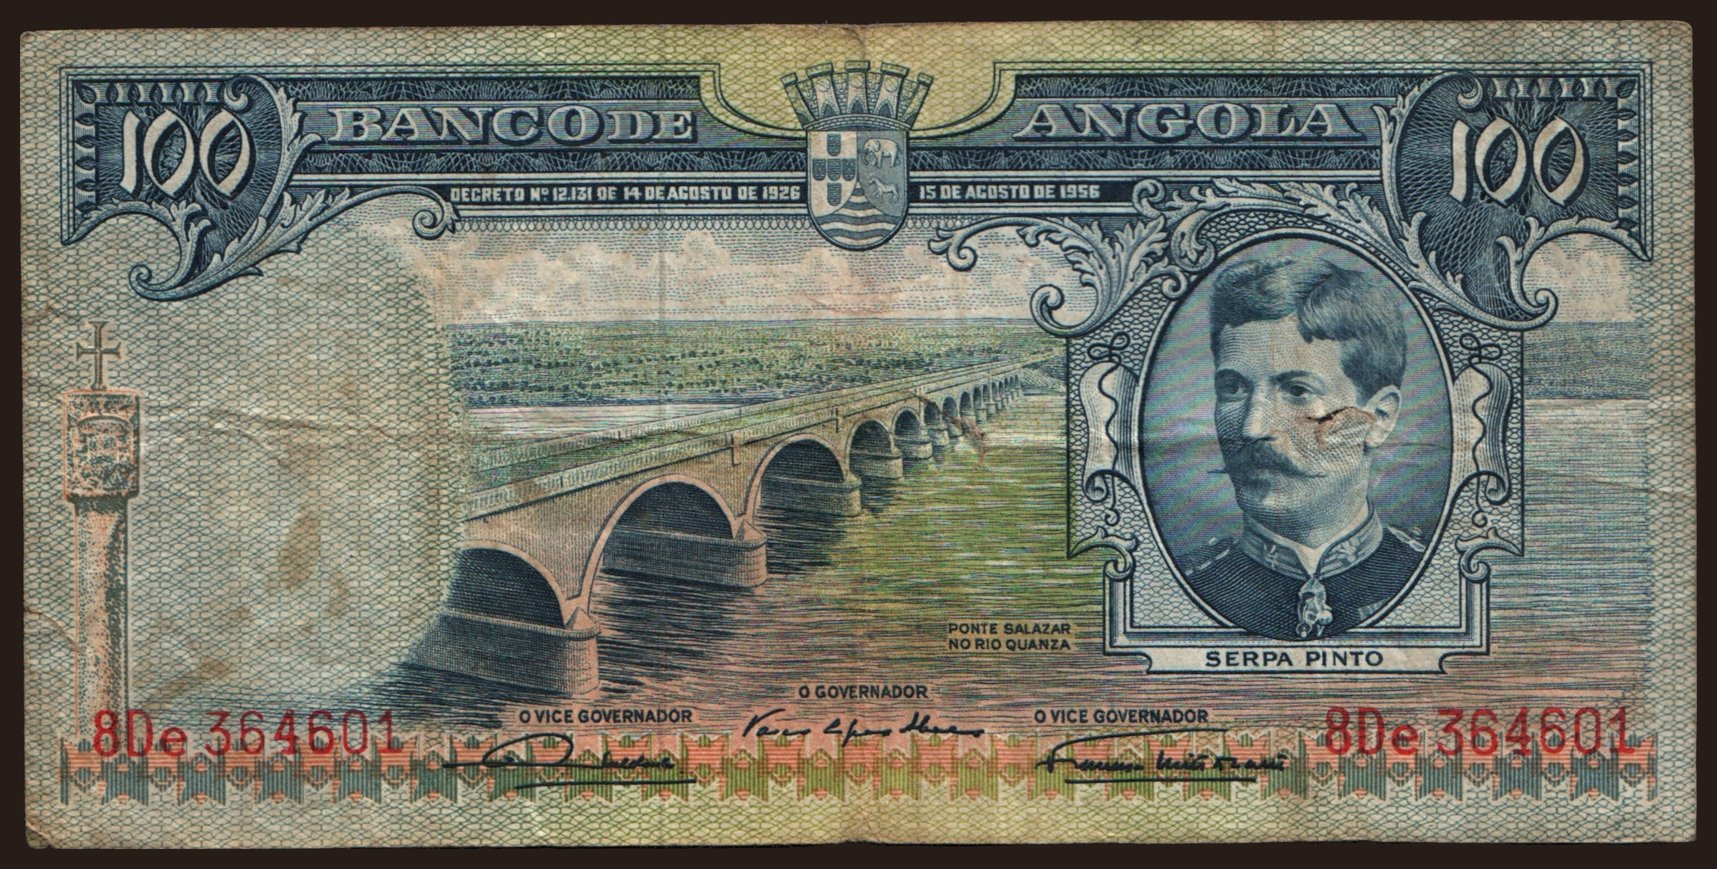 100 escudos, 1956